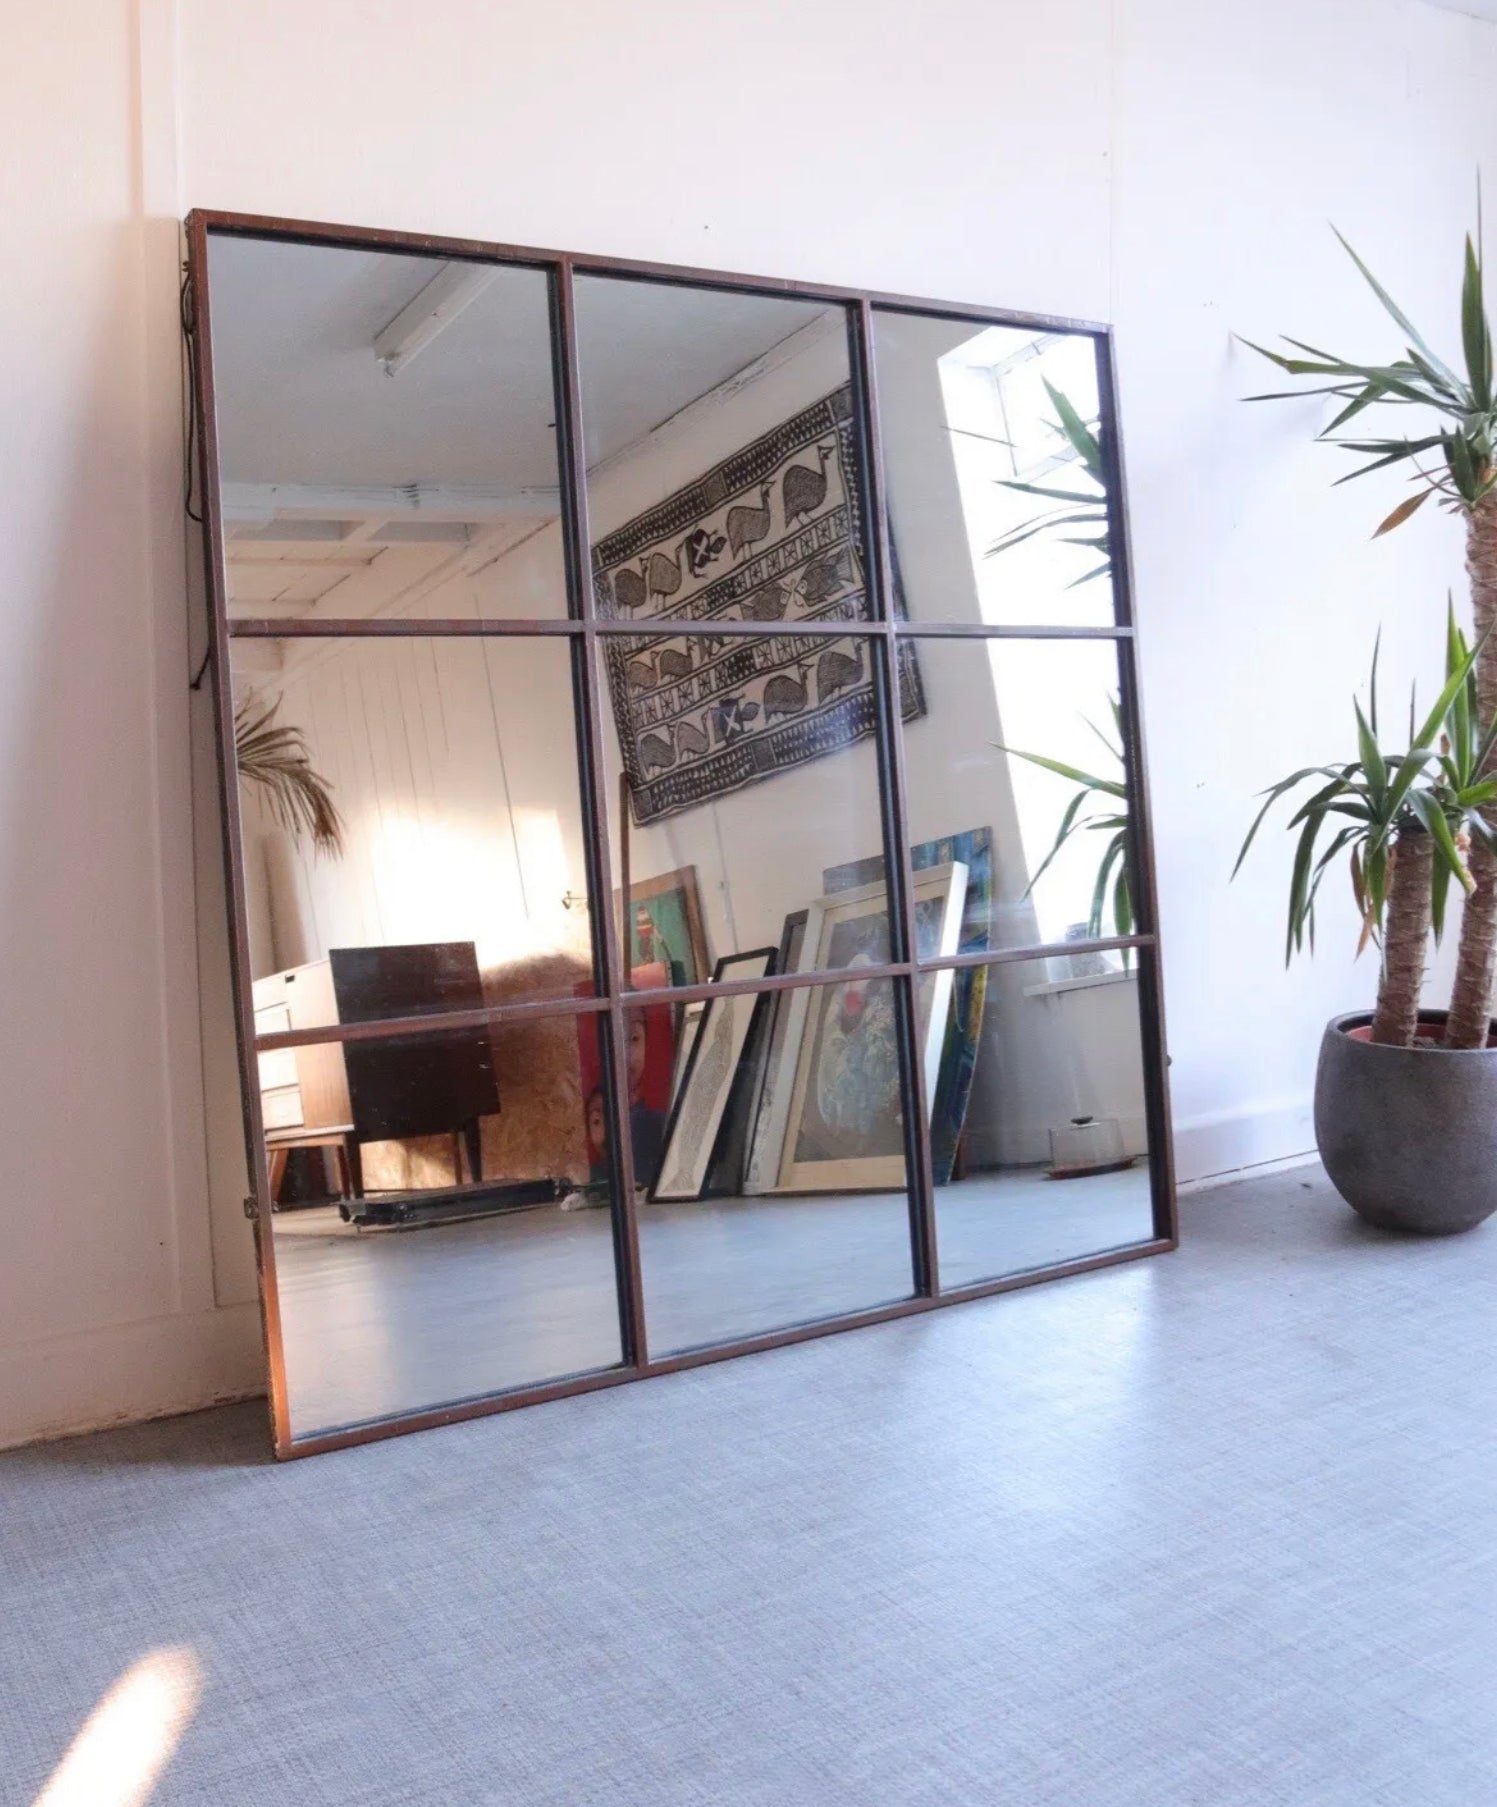 Industrial Full Length Window Panelled Mirror 118cm X 118cm Hallway Bedroom - teakyfinders